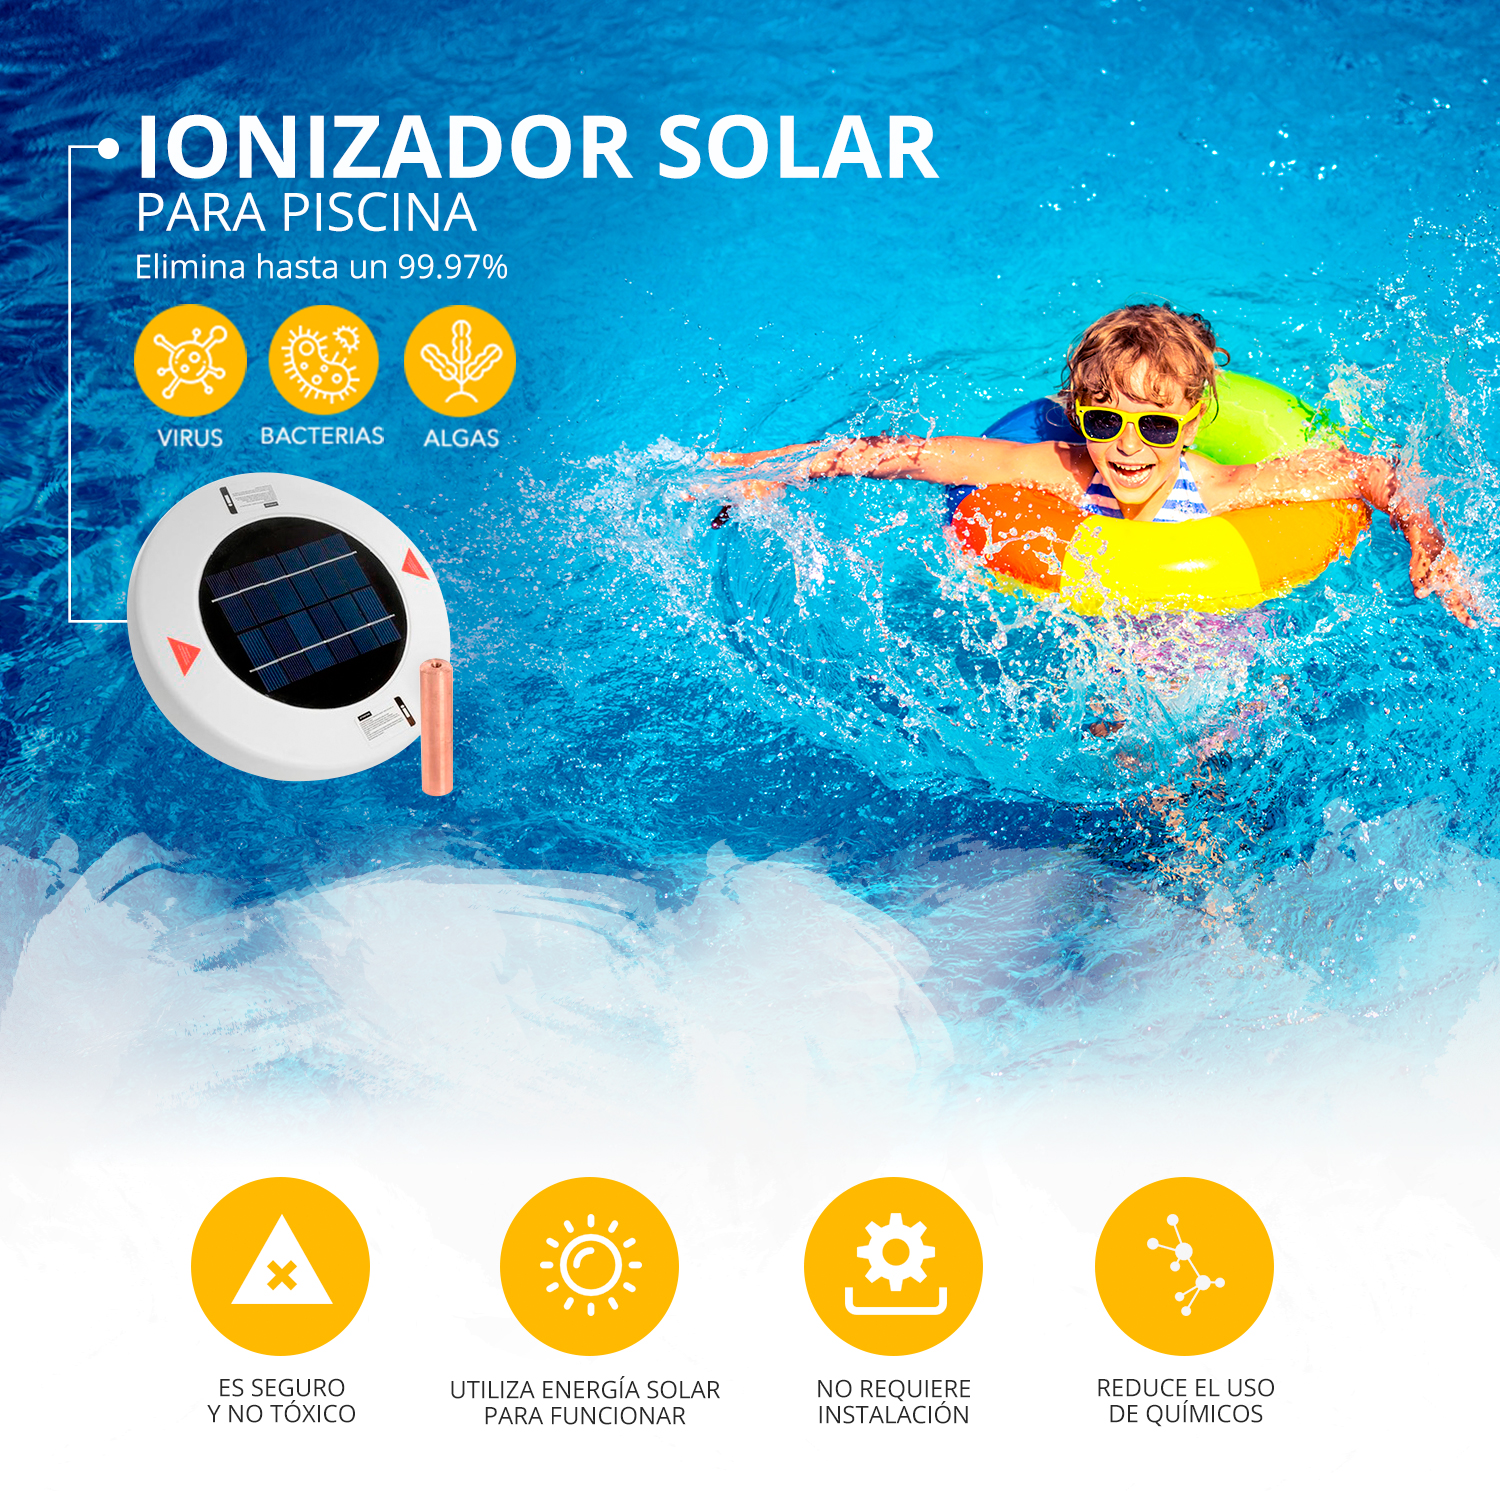 Ionizador solar para piscina